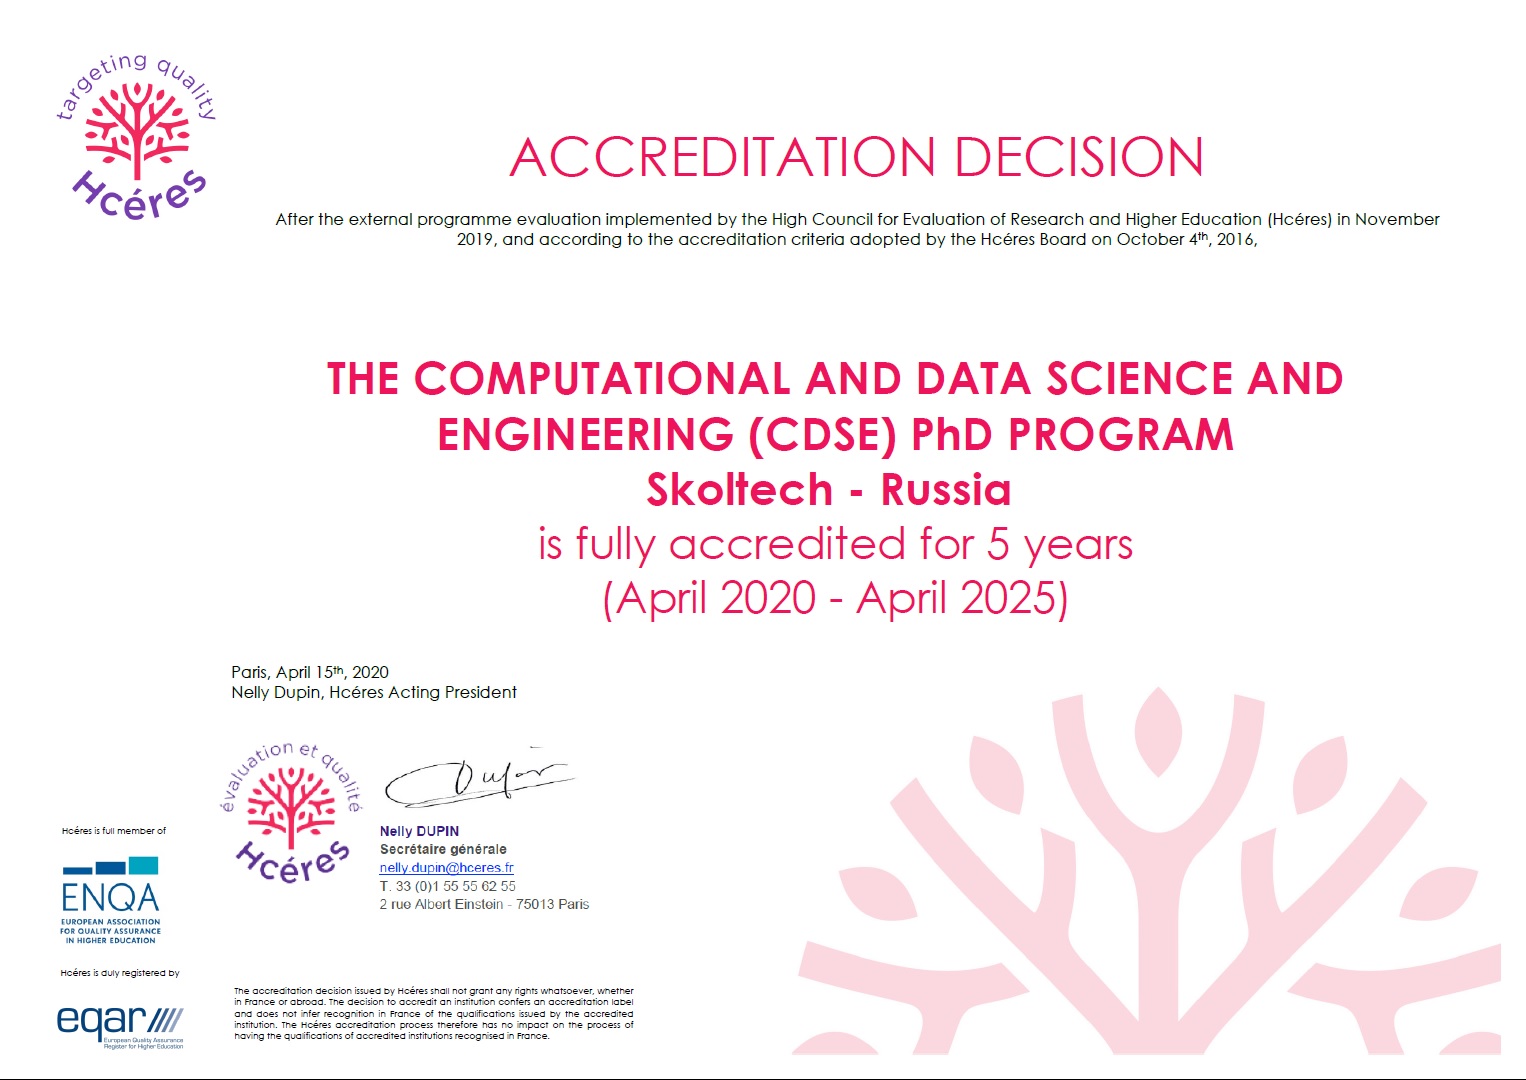 cdse-phd-accredited-2020-2025